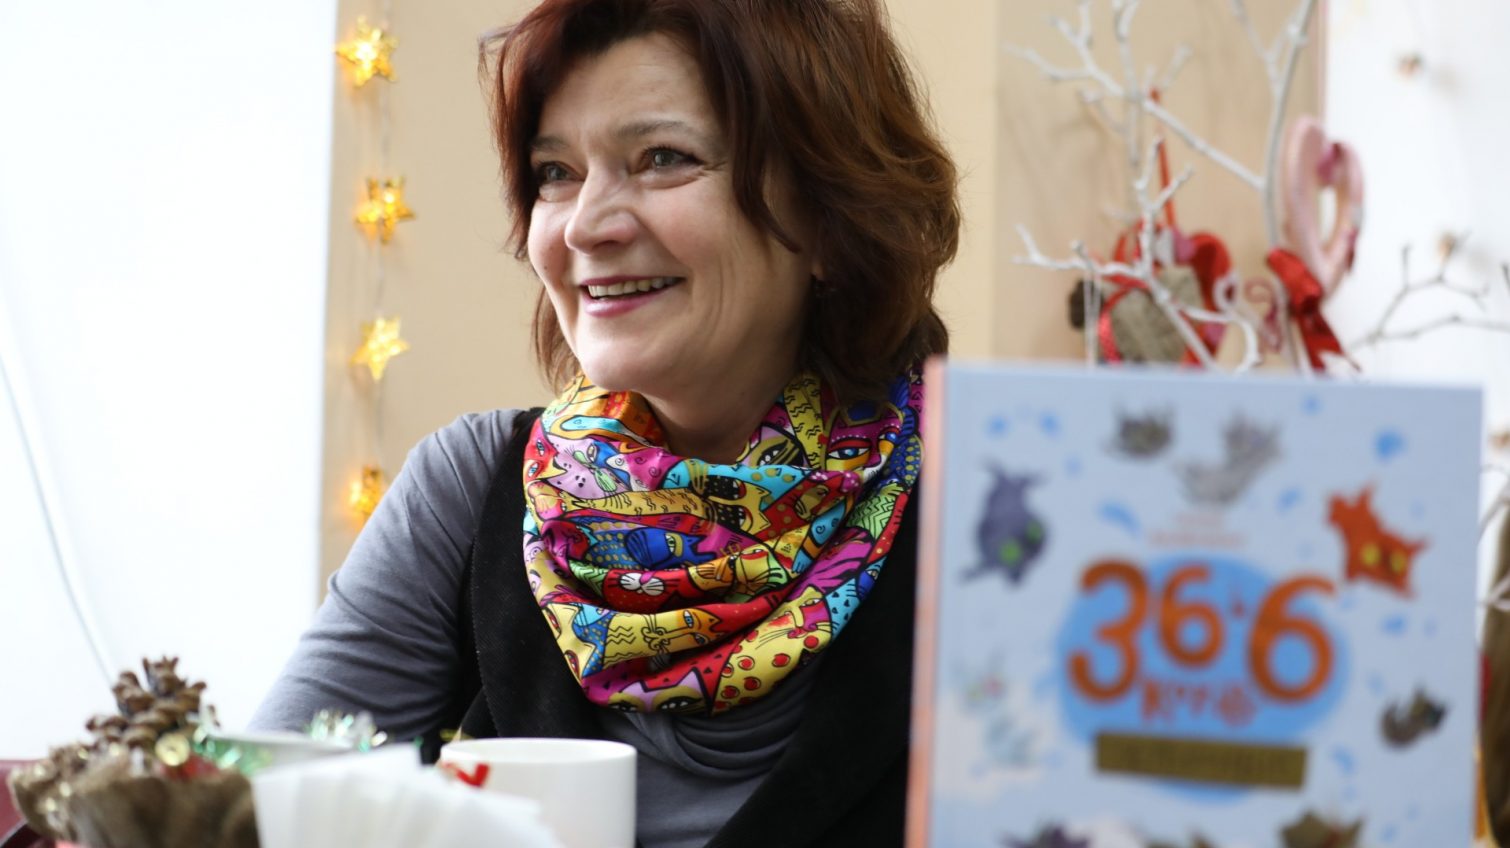 “Порой мы сами создаем легенды”, – украинская писательница и журналист Галина Вдовиченко «фото»